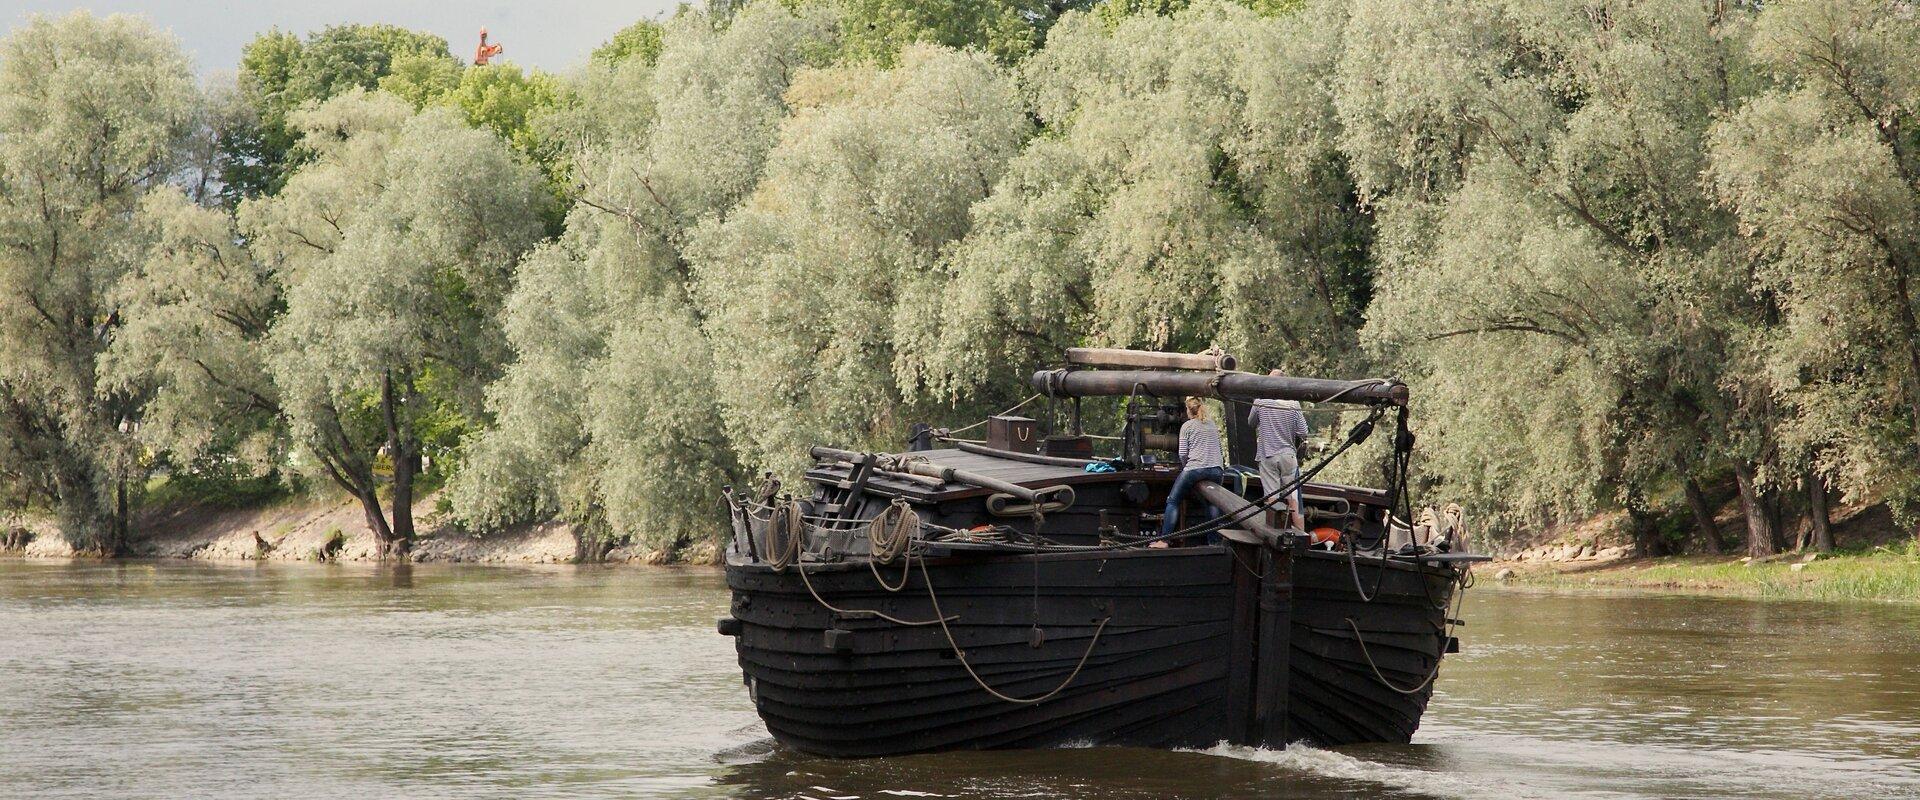 Das auf Emajõgi segelnde historische Lodi-Boot